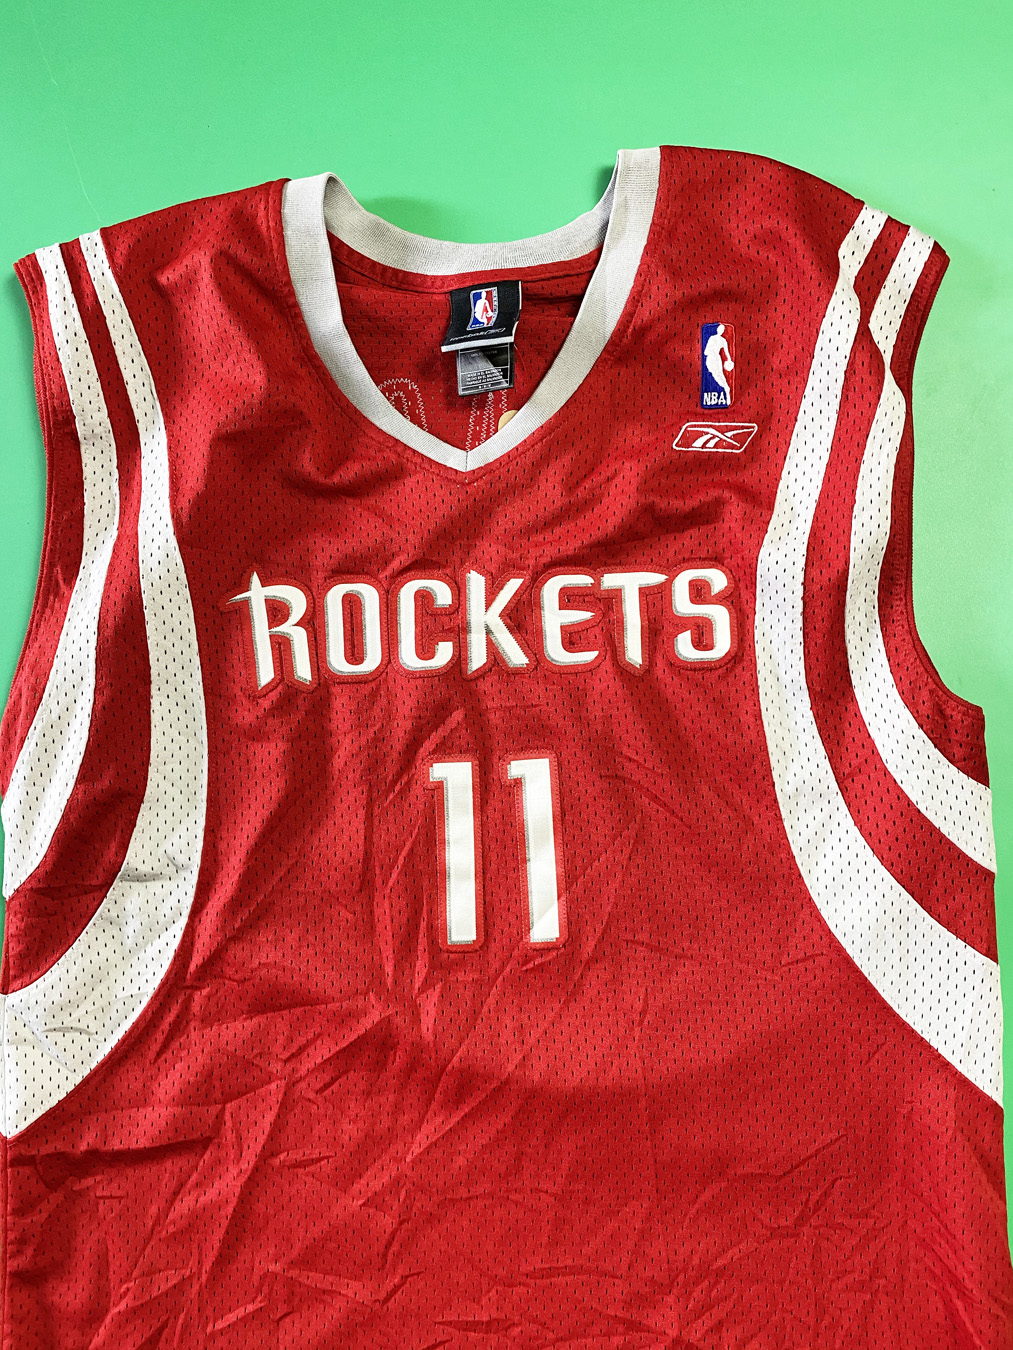 Yao Ming Rockets jersey